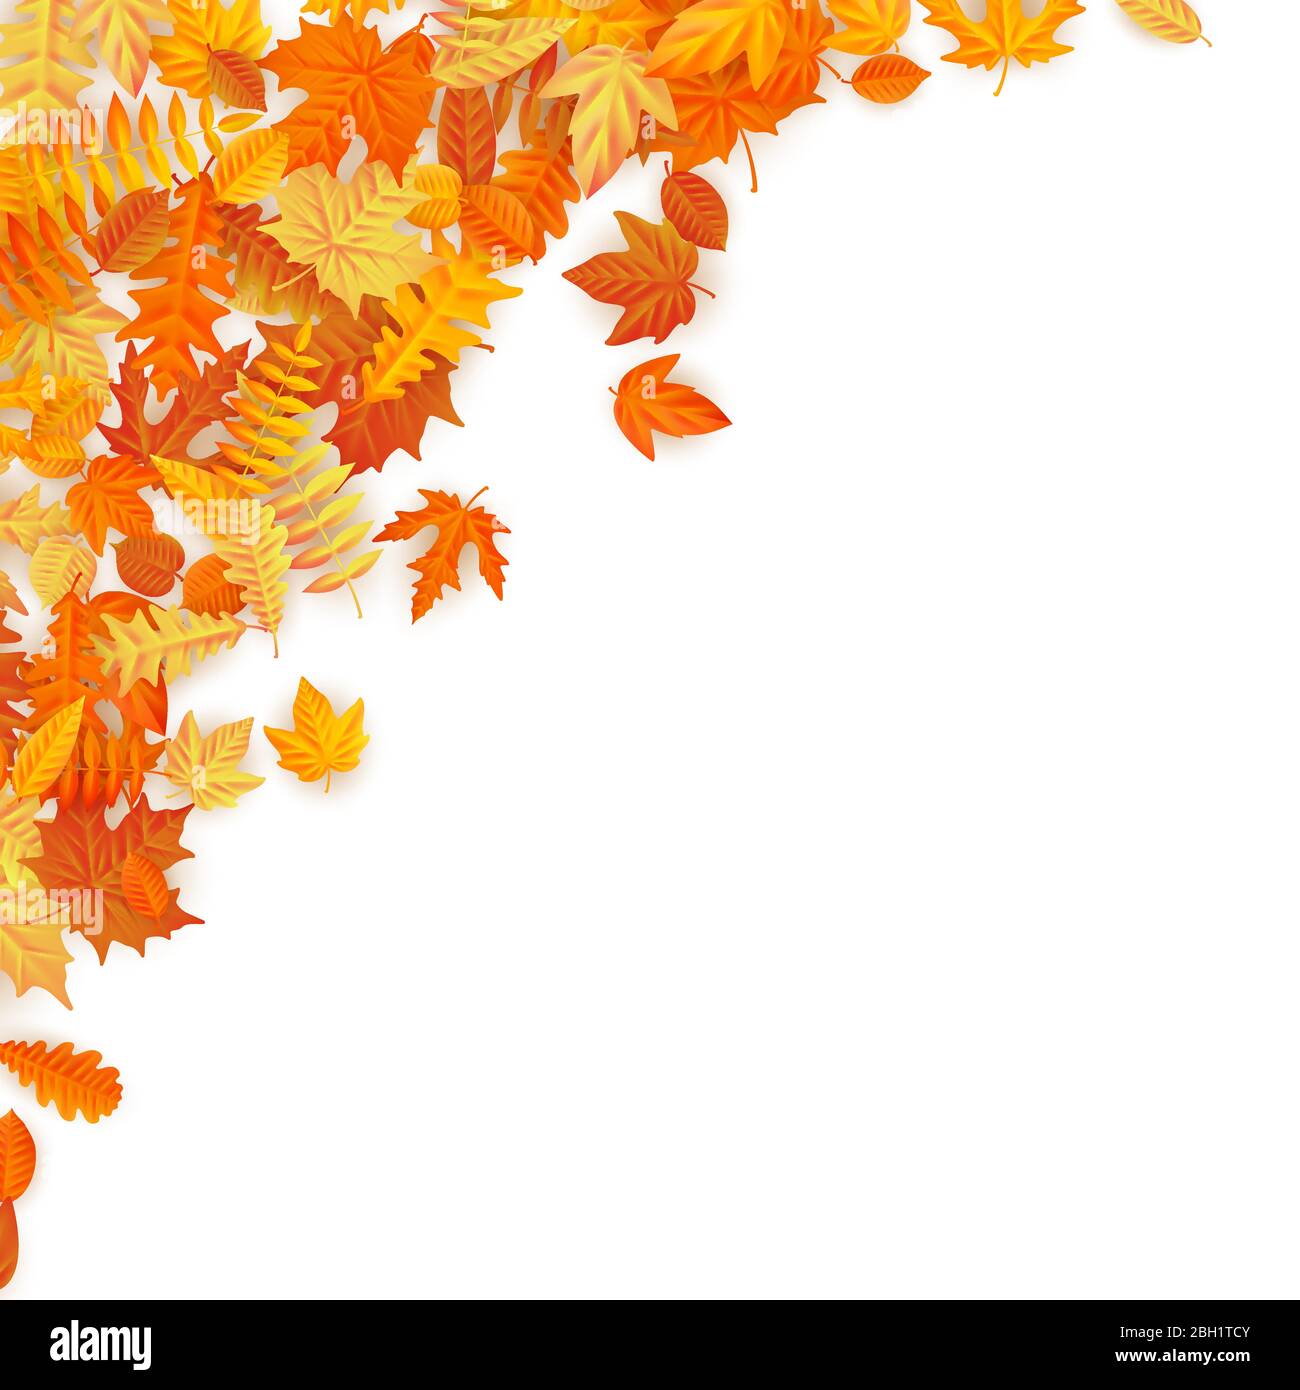 Cornice con foglie autunnali rosse, arancioni, marroni e gialle. EPS 10 Illustrazione Vettoriale